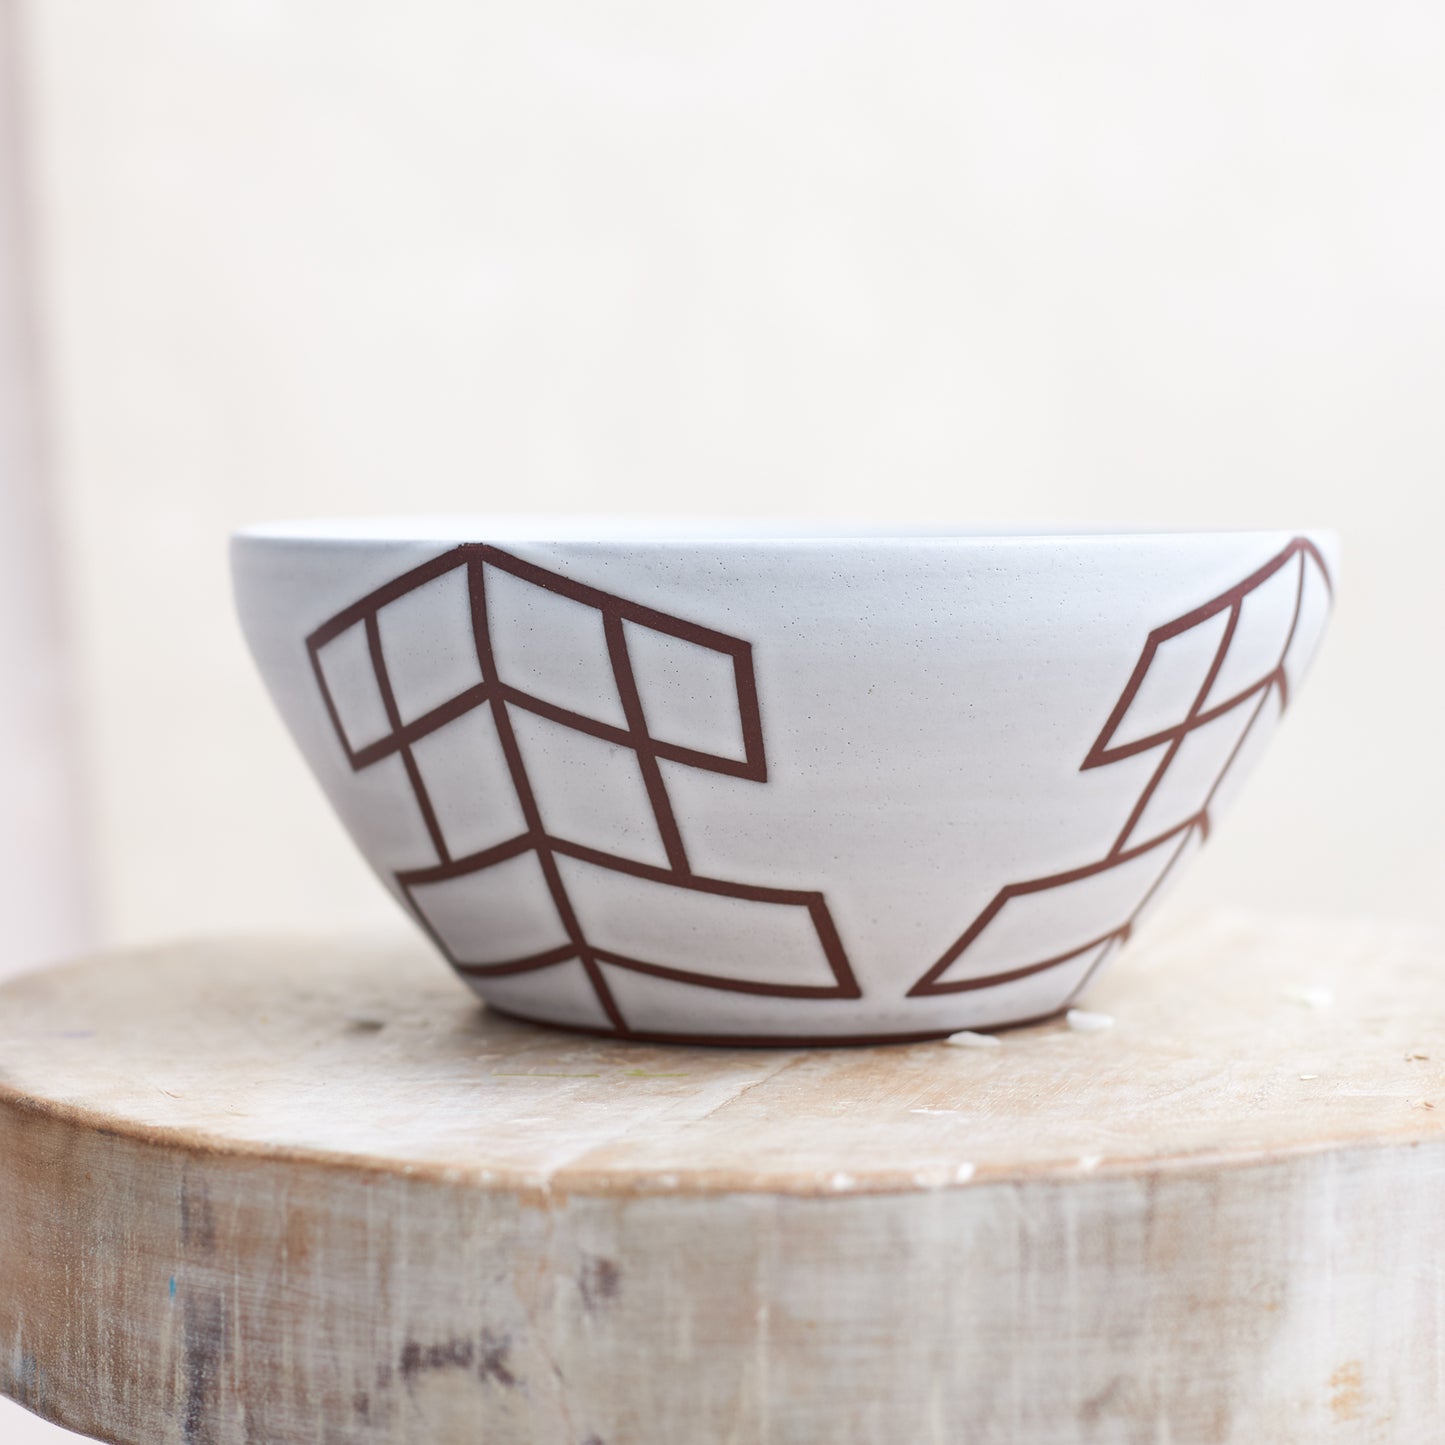 Geometric Handmade Ceramic Bowl - White and Mahogany